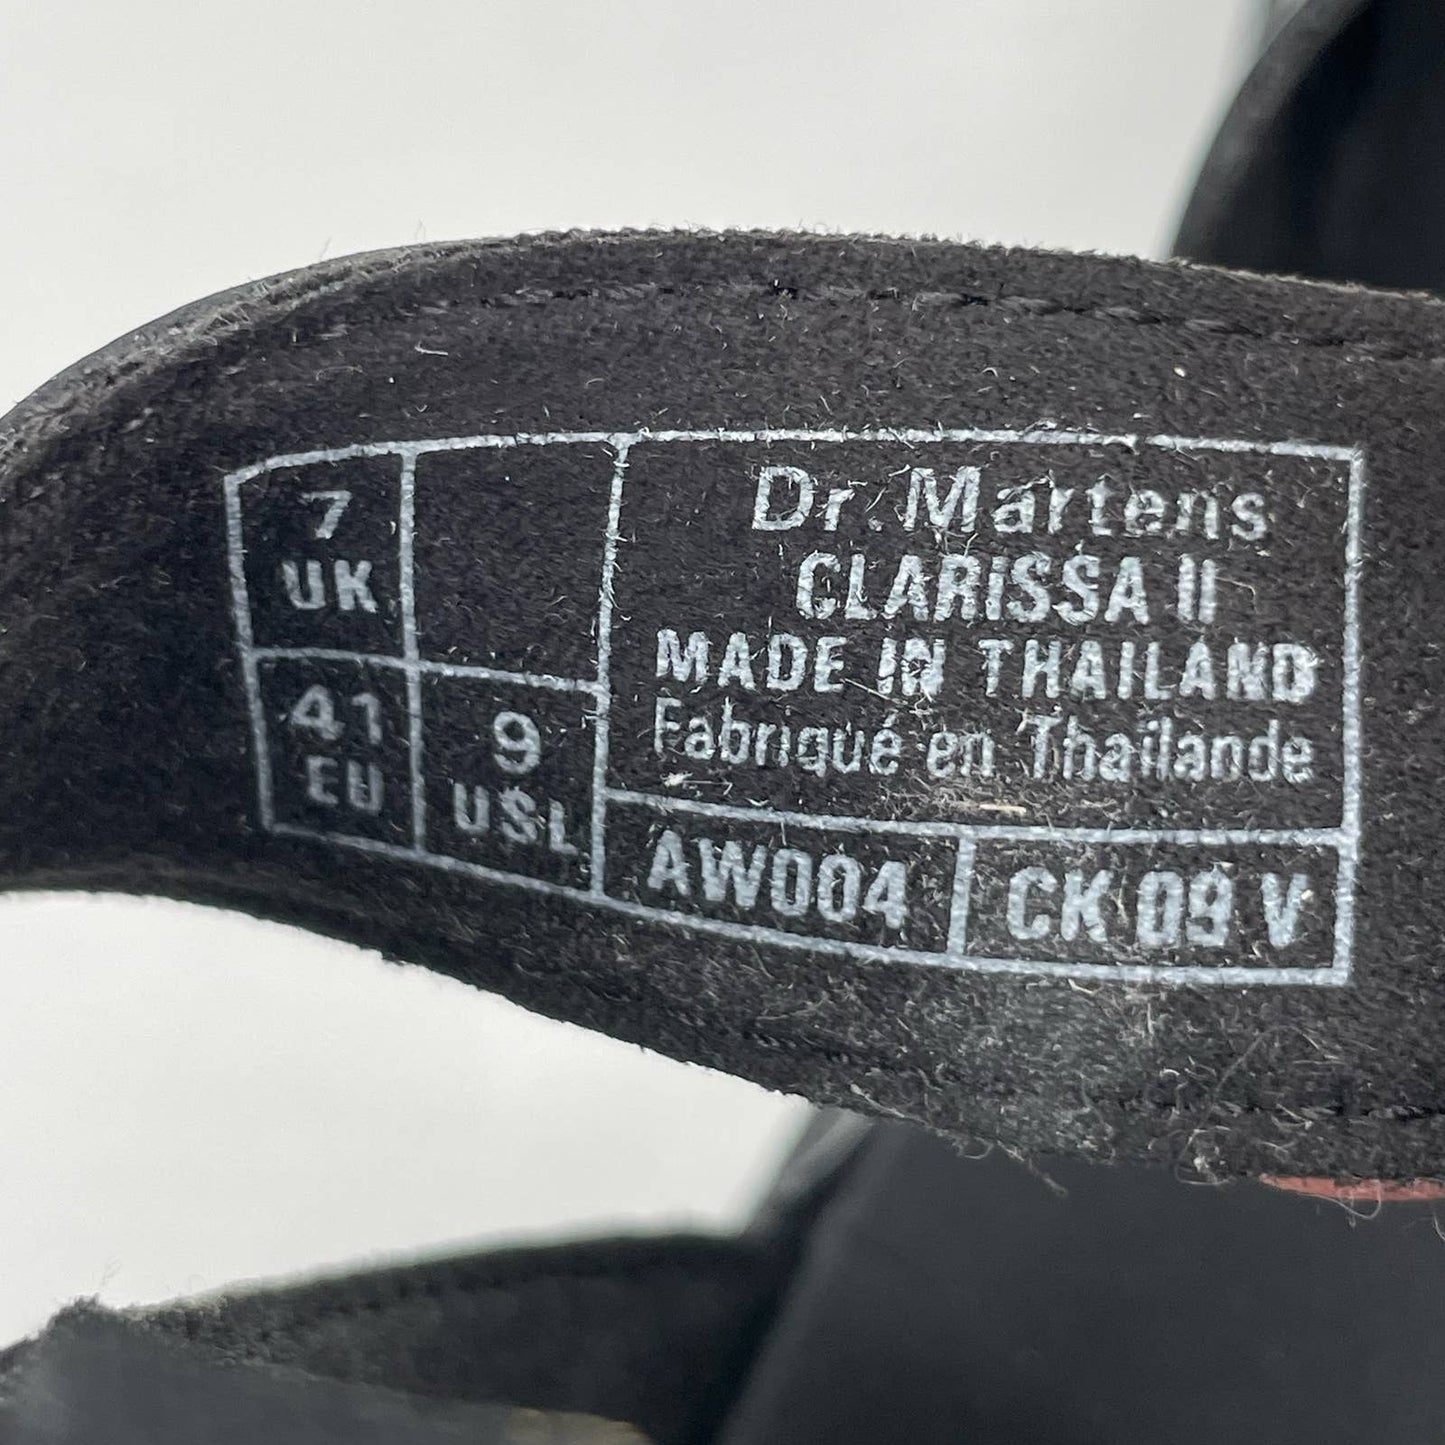 Dr. Martens Clarissa II Black Patent Leather Sandals Goth Grunge Summer Size 9